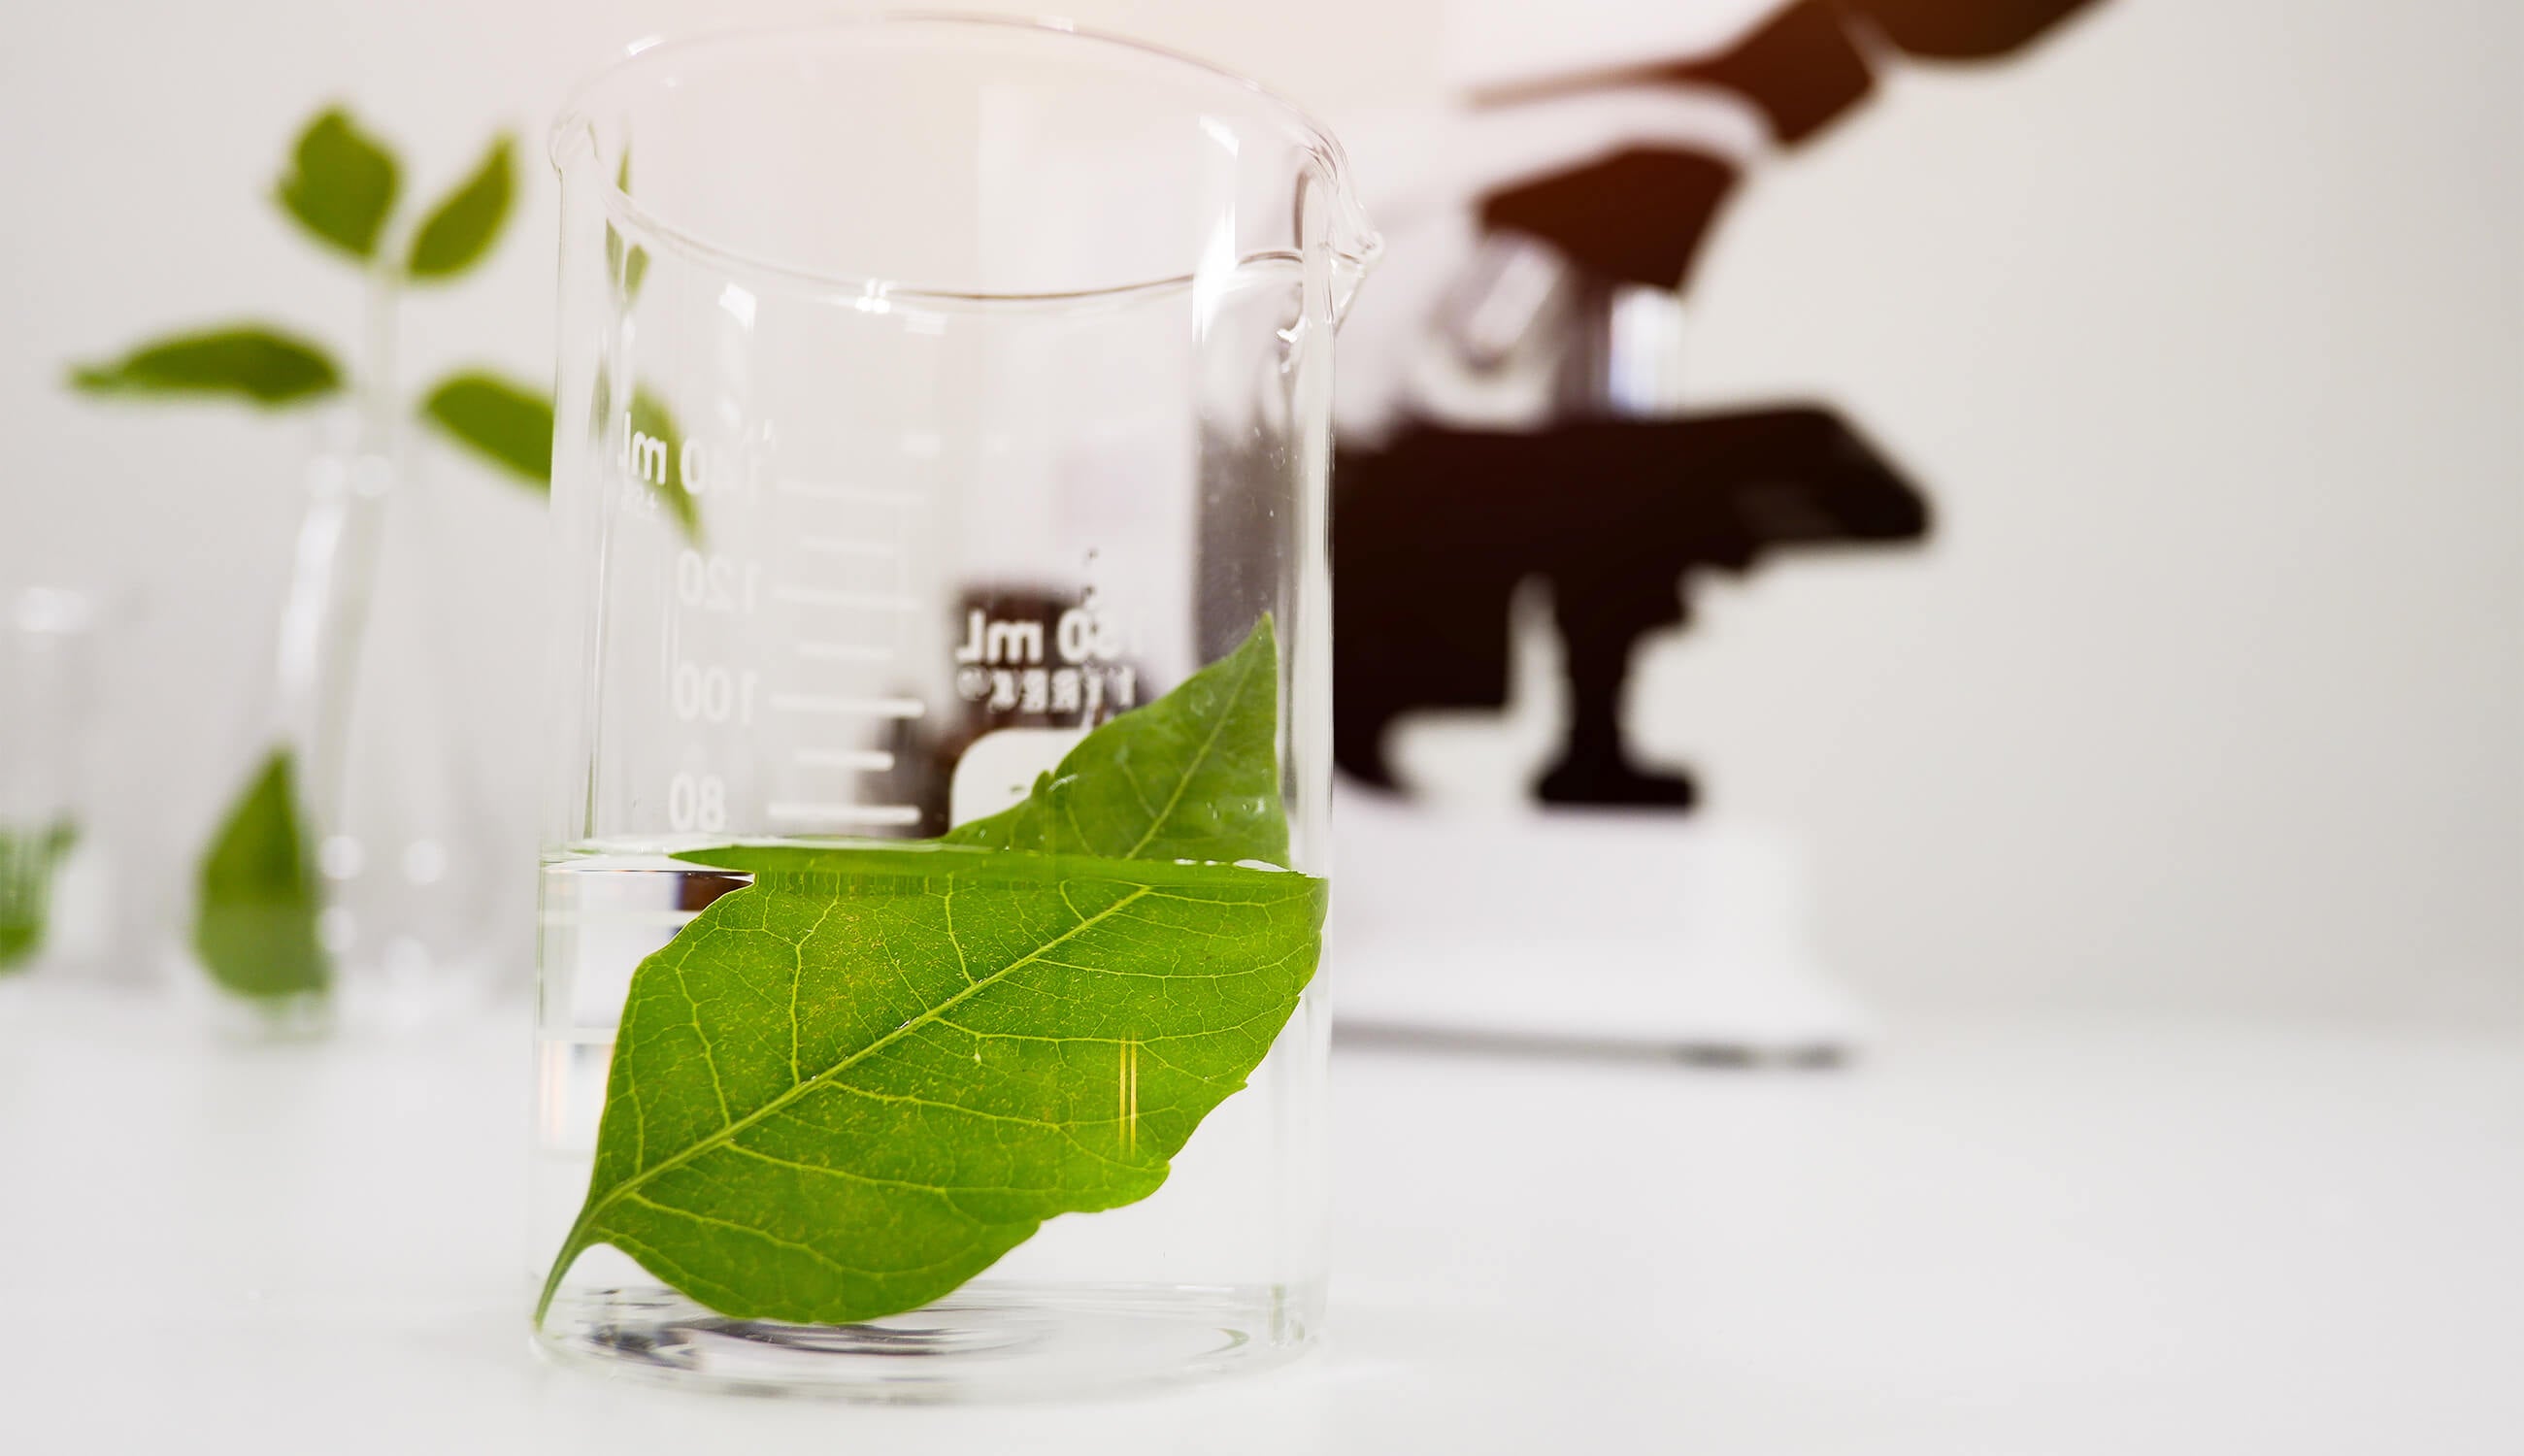 Main_green leaf in lab glass.jpg